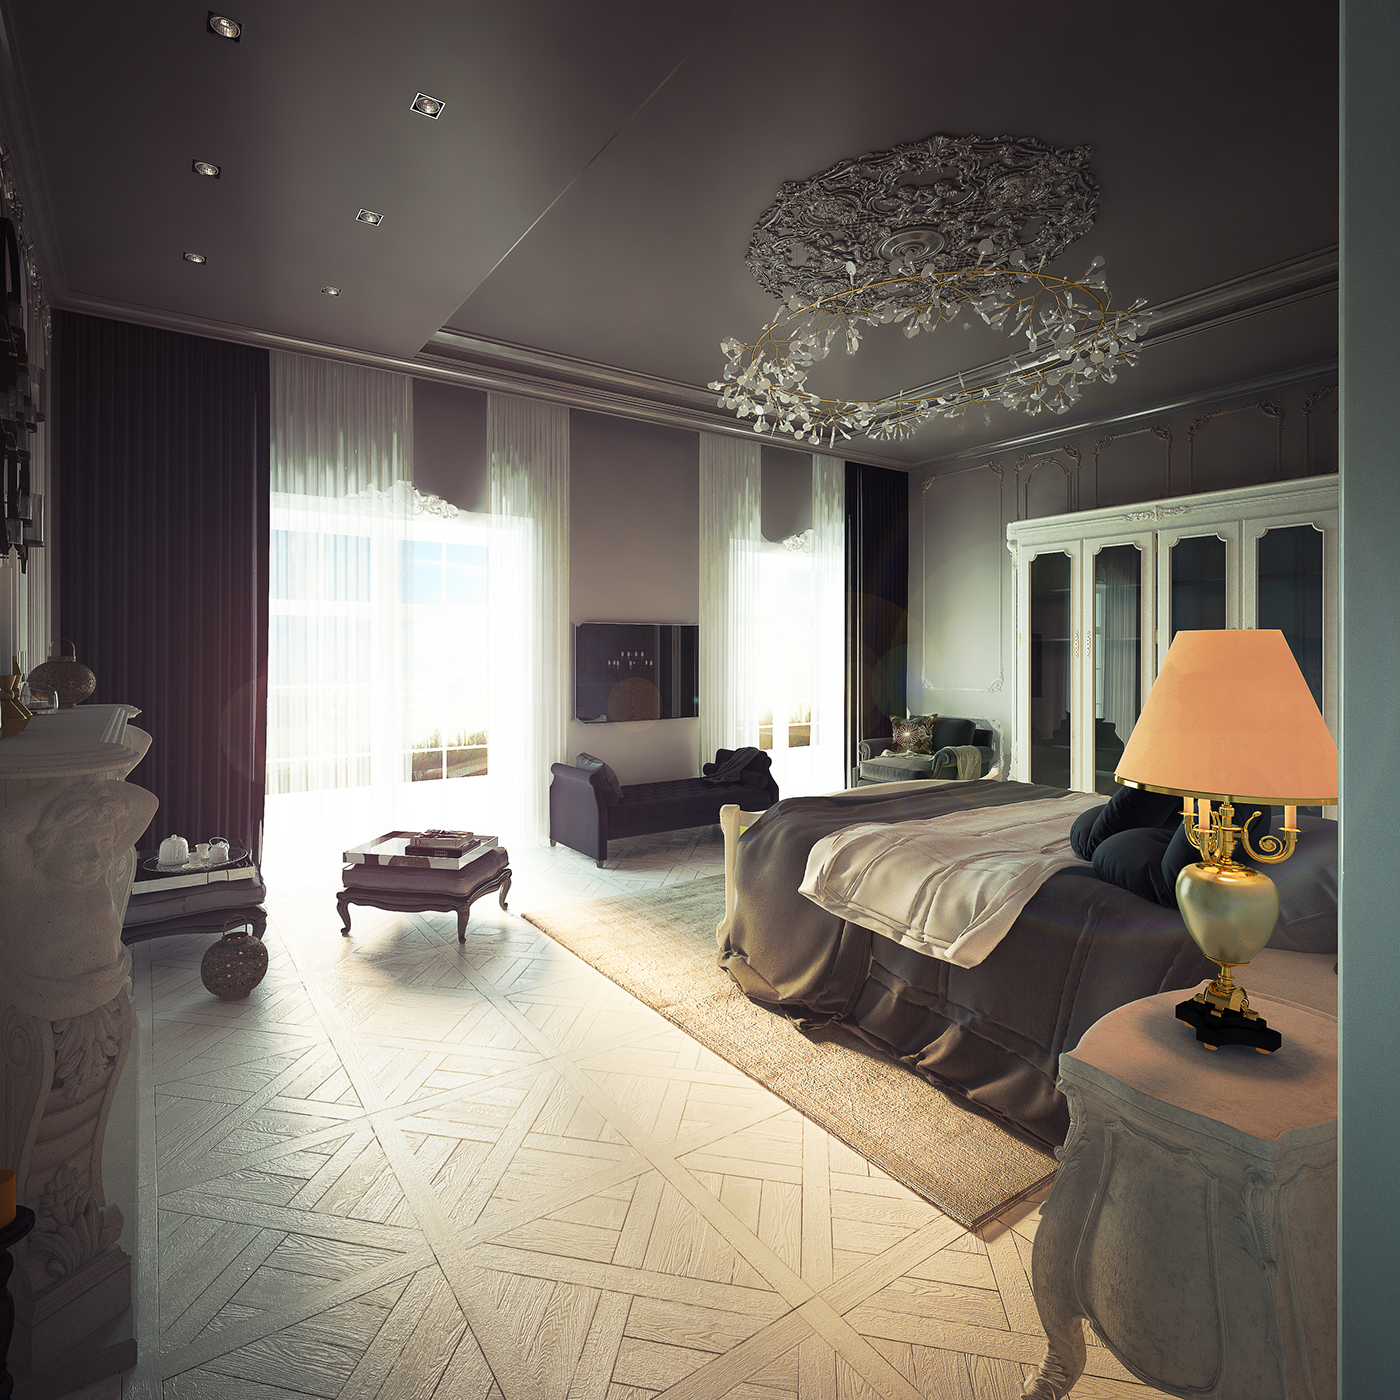 Classic interior design  neoclassic interior Classic bedroom Neoclassical house modern classic design MOOOI baxter Minotti artemide